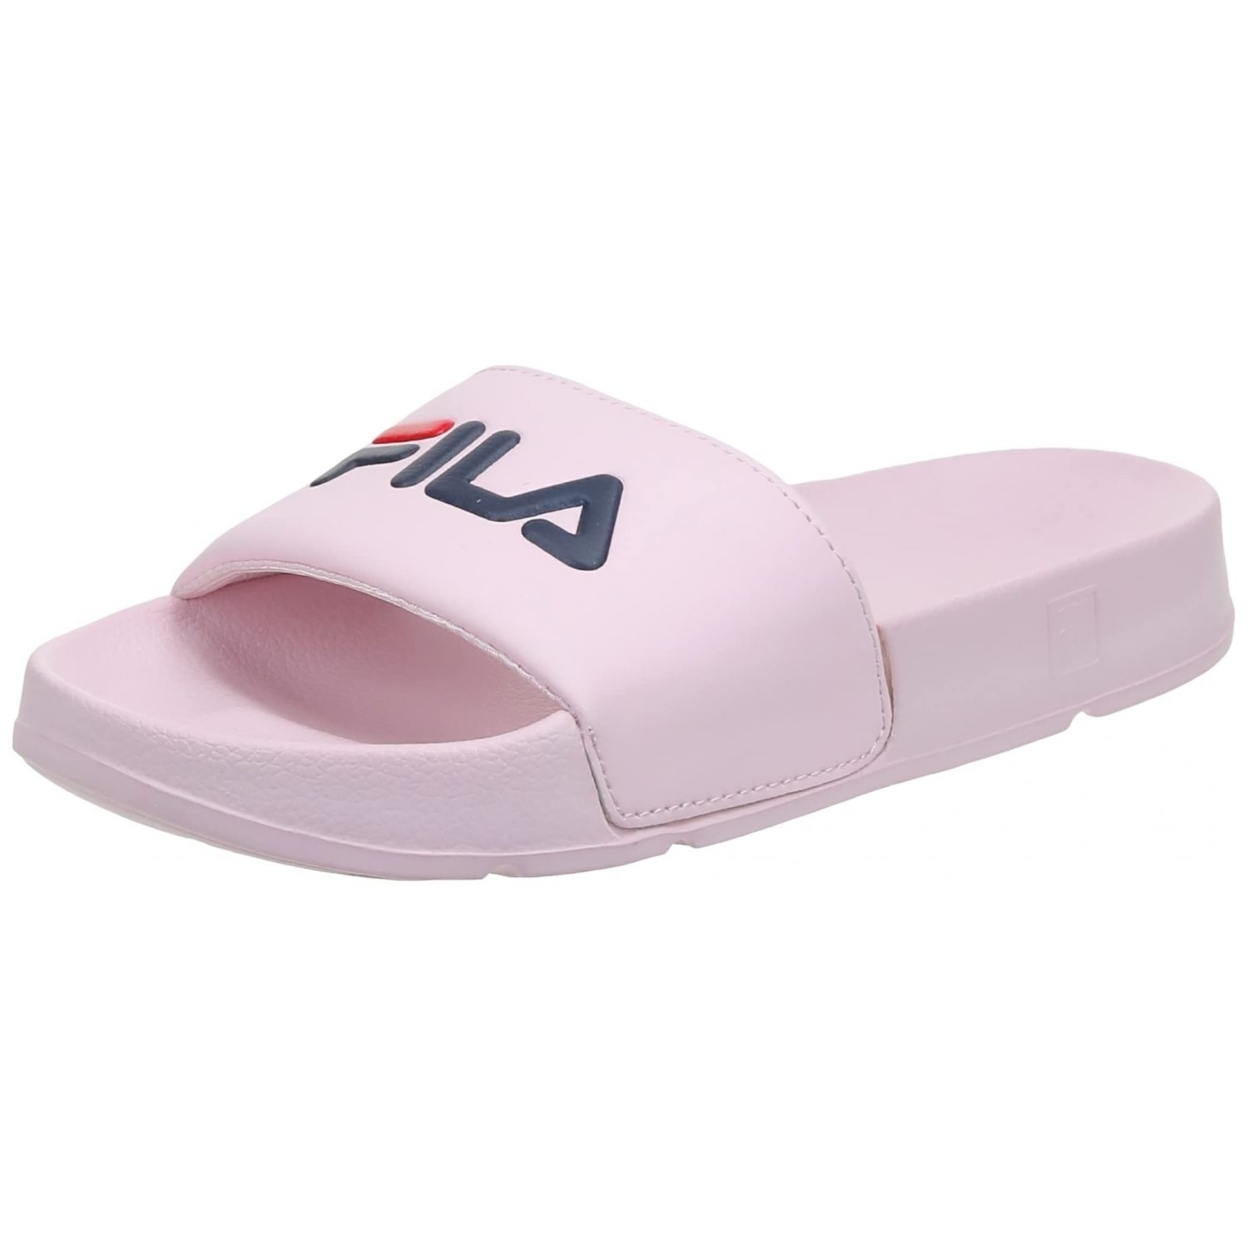 Fila Women's Drifter Slide Sandal 9 D(M) US BBRD/FNVY/FRED - BBRD/FNVY/FRED, 6